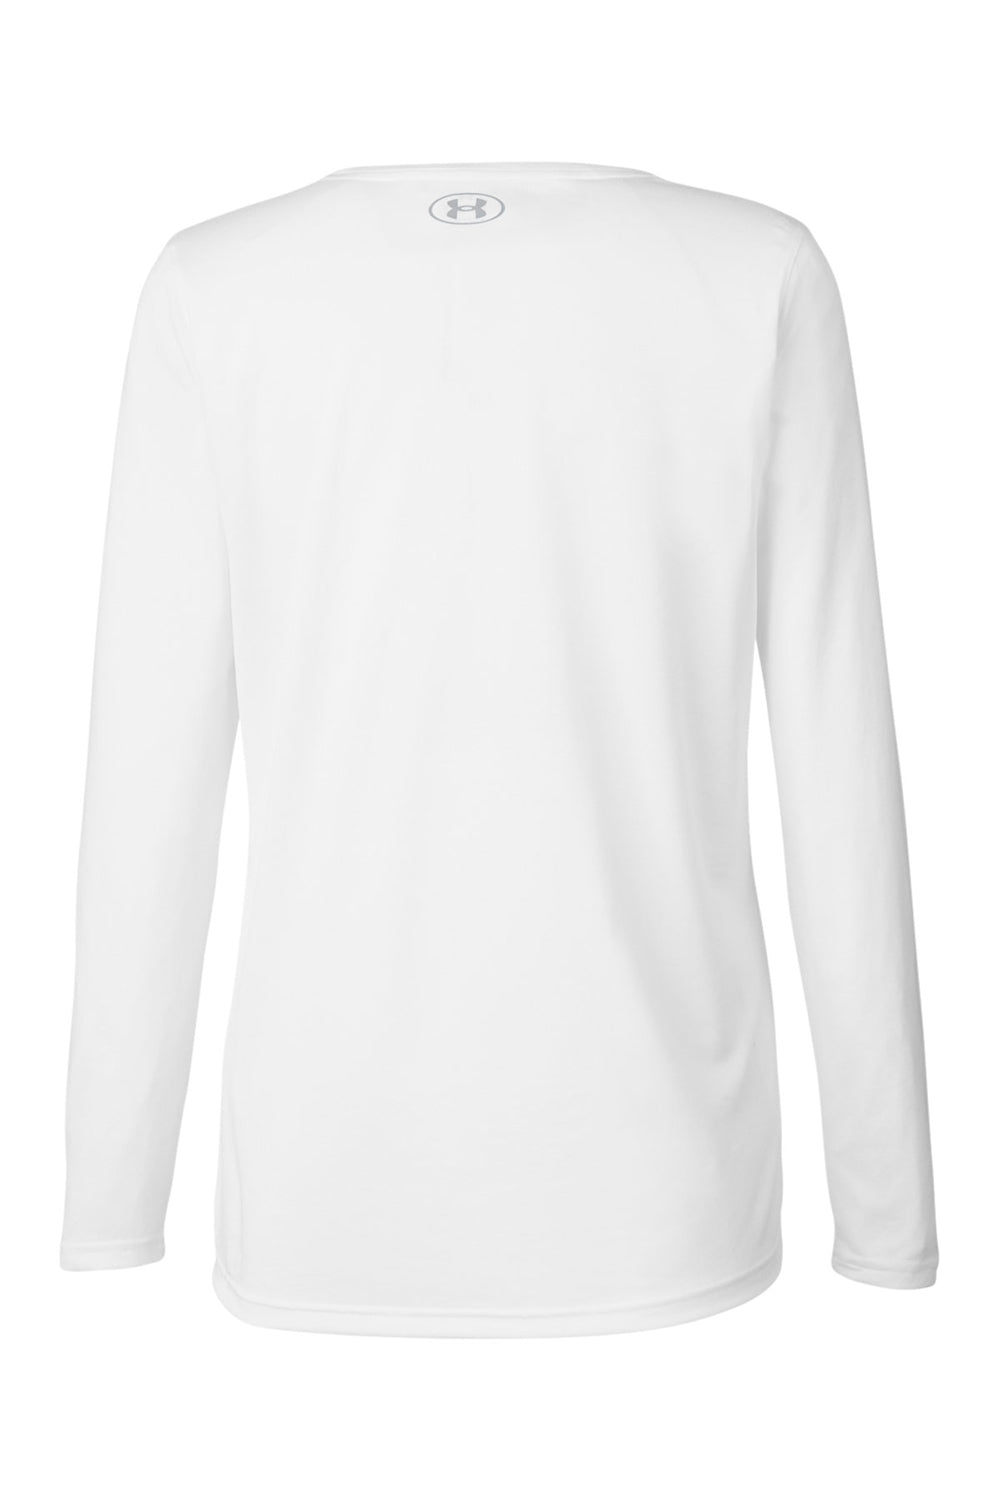 Under Armour 1376852 Womens Team Tech Moisture Wicking Long Sleeve Crewneck T-Shirt White Flat Back